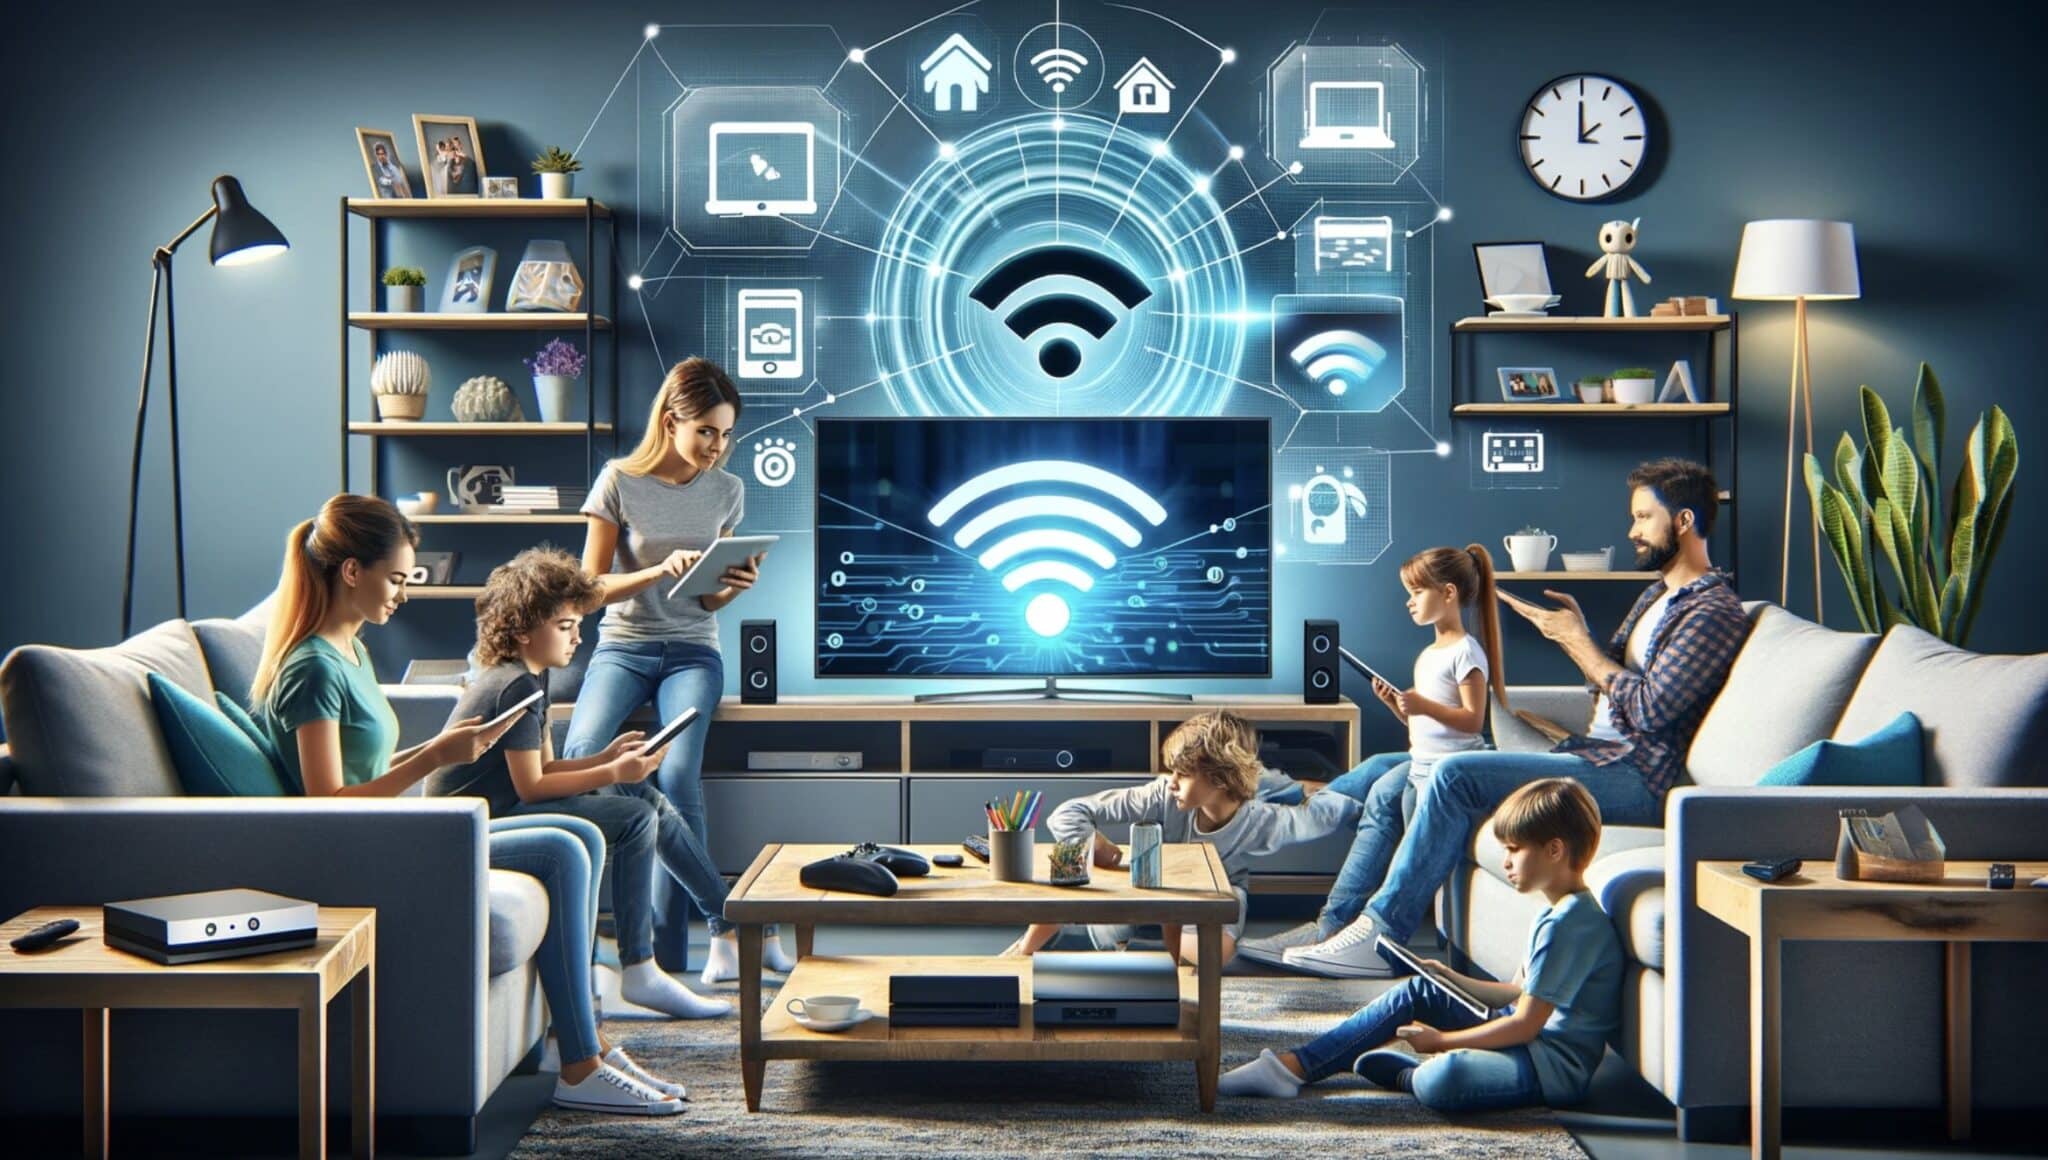 Wi-Fi 7: The Future of Wireless Technology